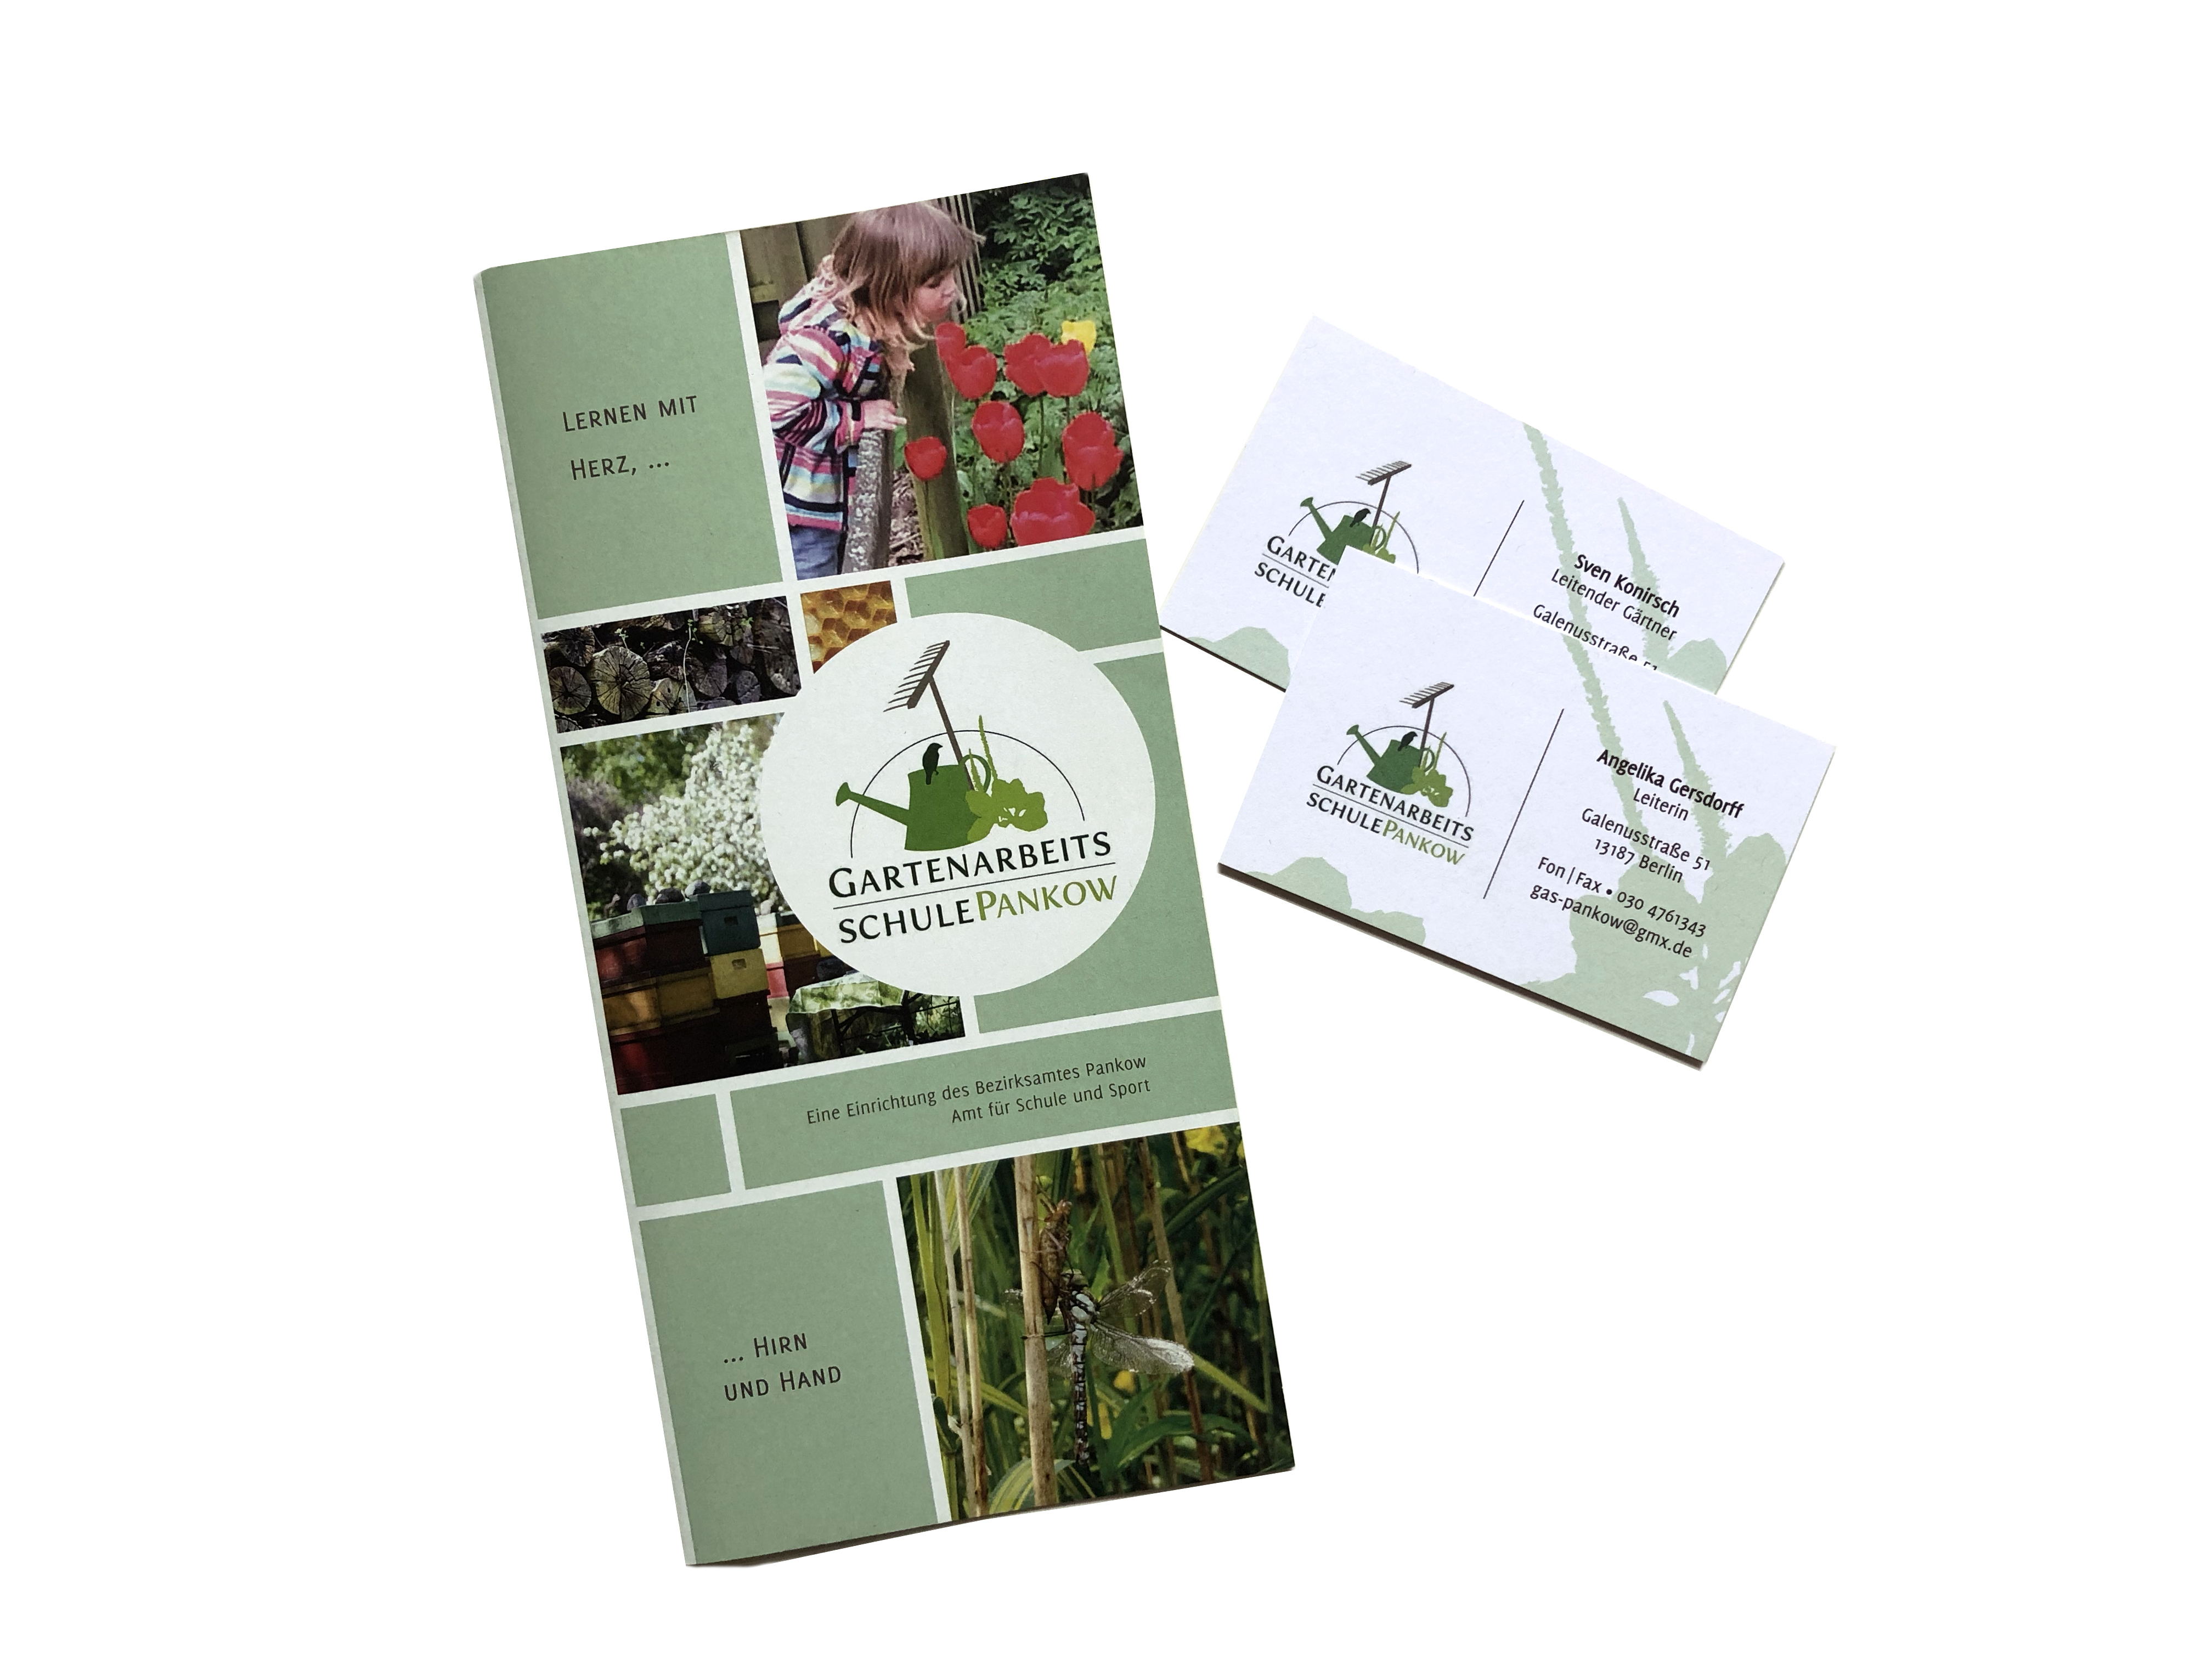 Gartenarbeitsschule Pankow: Flyer & Visitenkarten